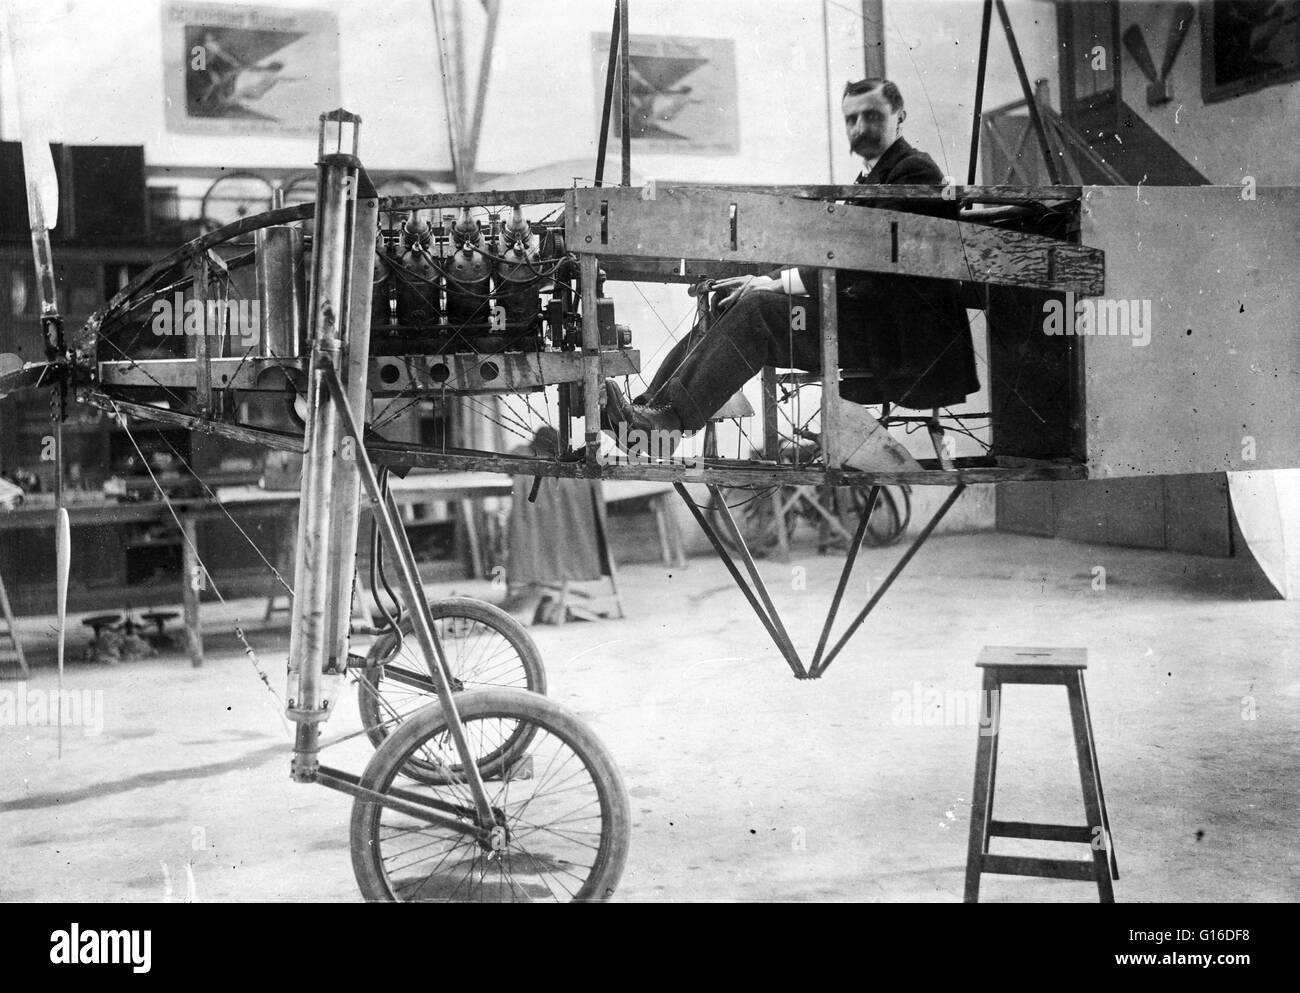 Blériot à la barre de son monoplan, meublé avec moteur automatique de 50 chevaux. Charles Joseph Louis Blériot (1 juillet 1872 - 1 août 1936) était un aviateur français, inventeur et ingénieur. Il a développé la première lampe frontale pratique pour les voitures et establi Banque D'Images